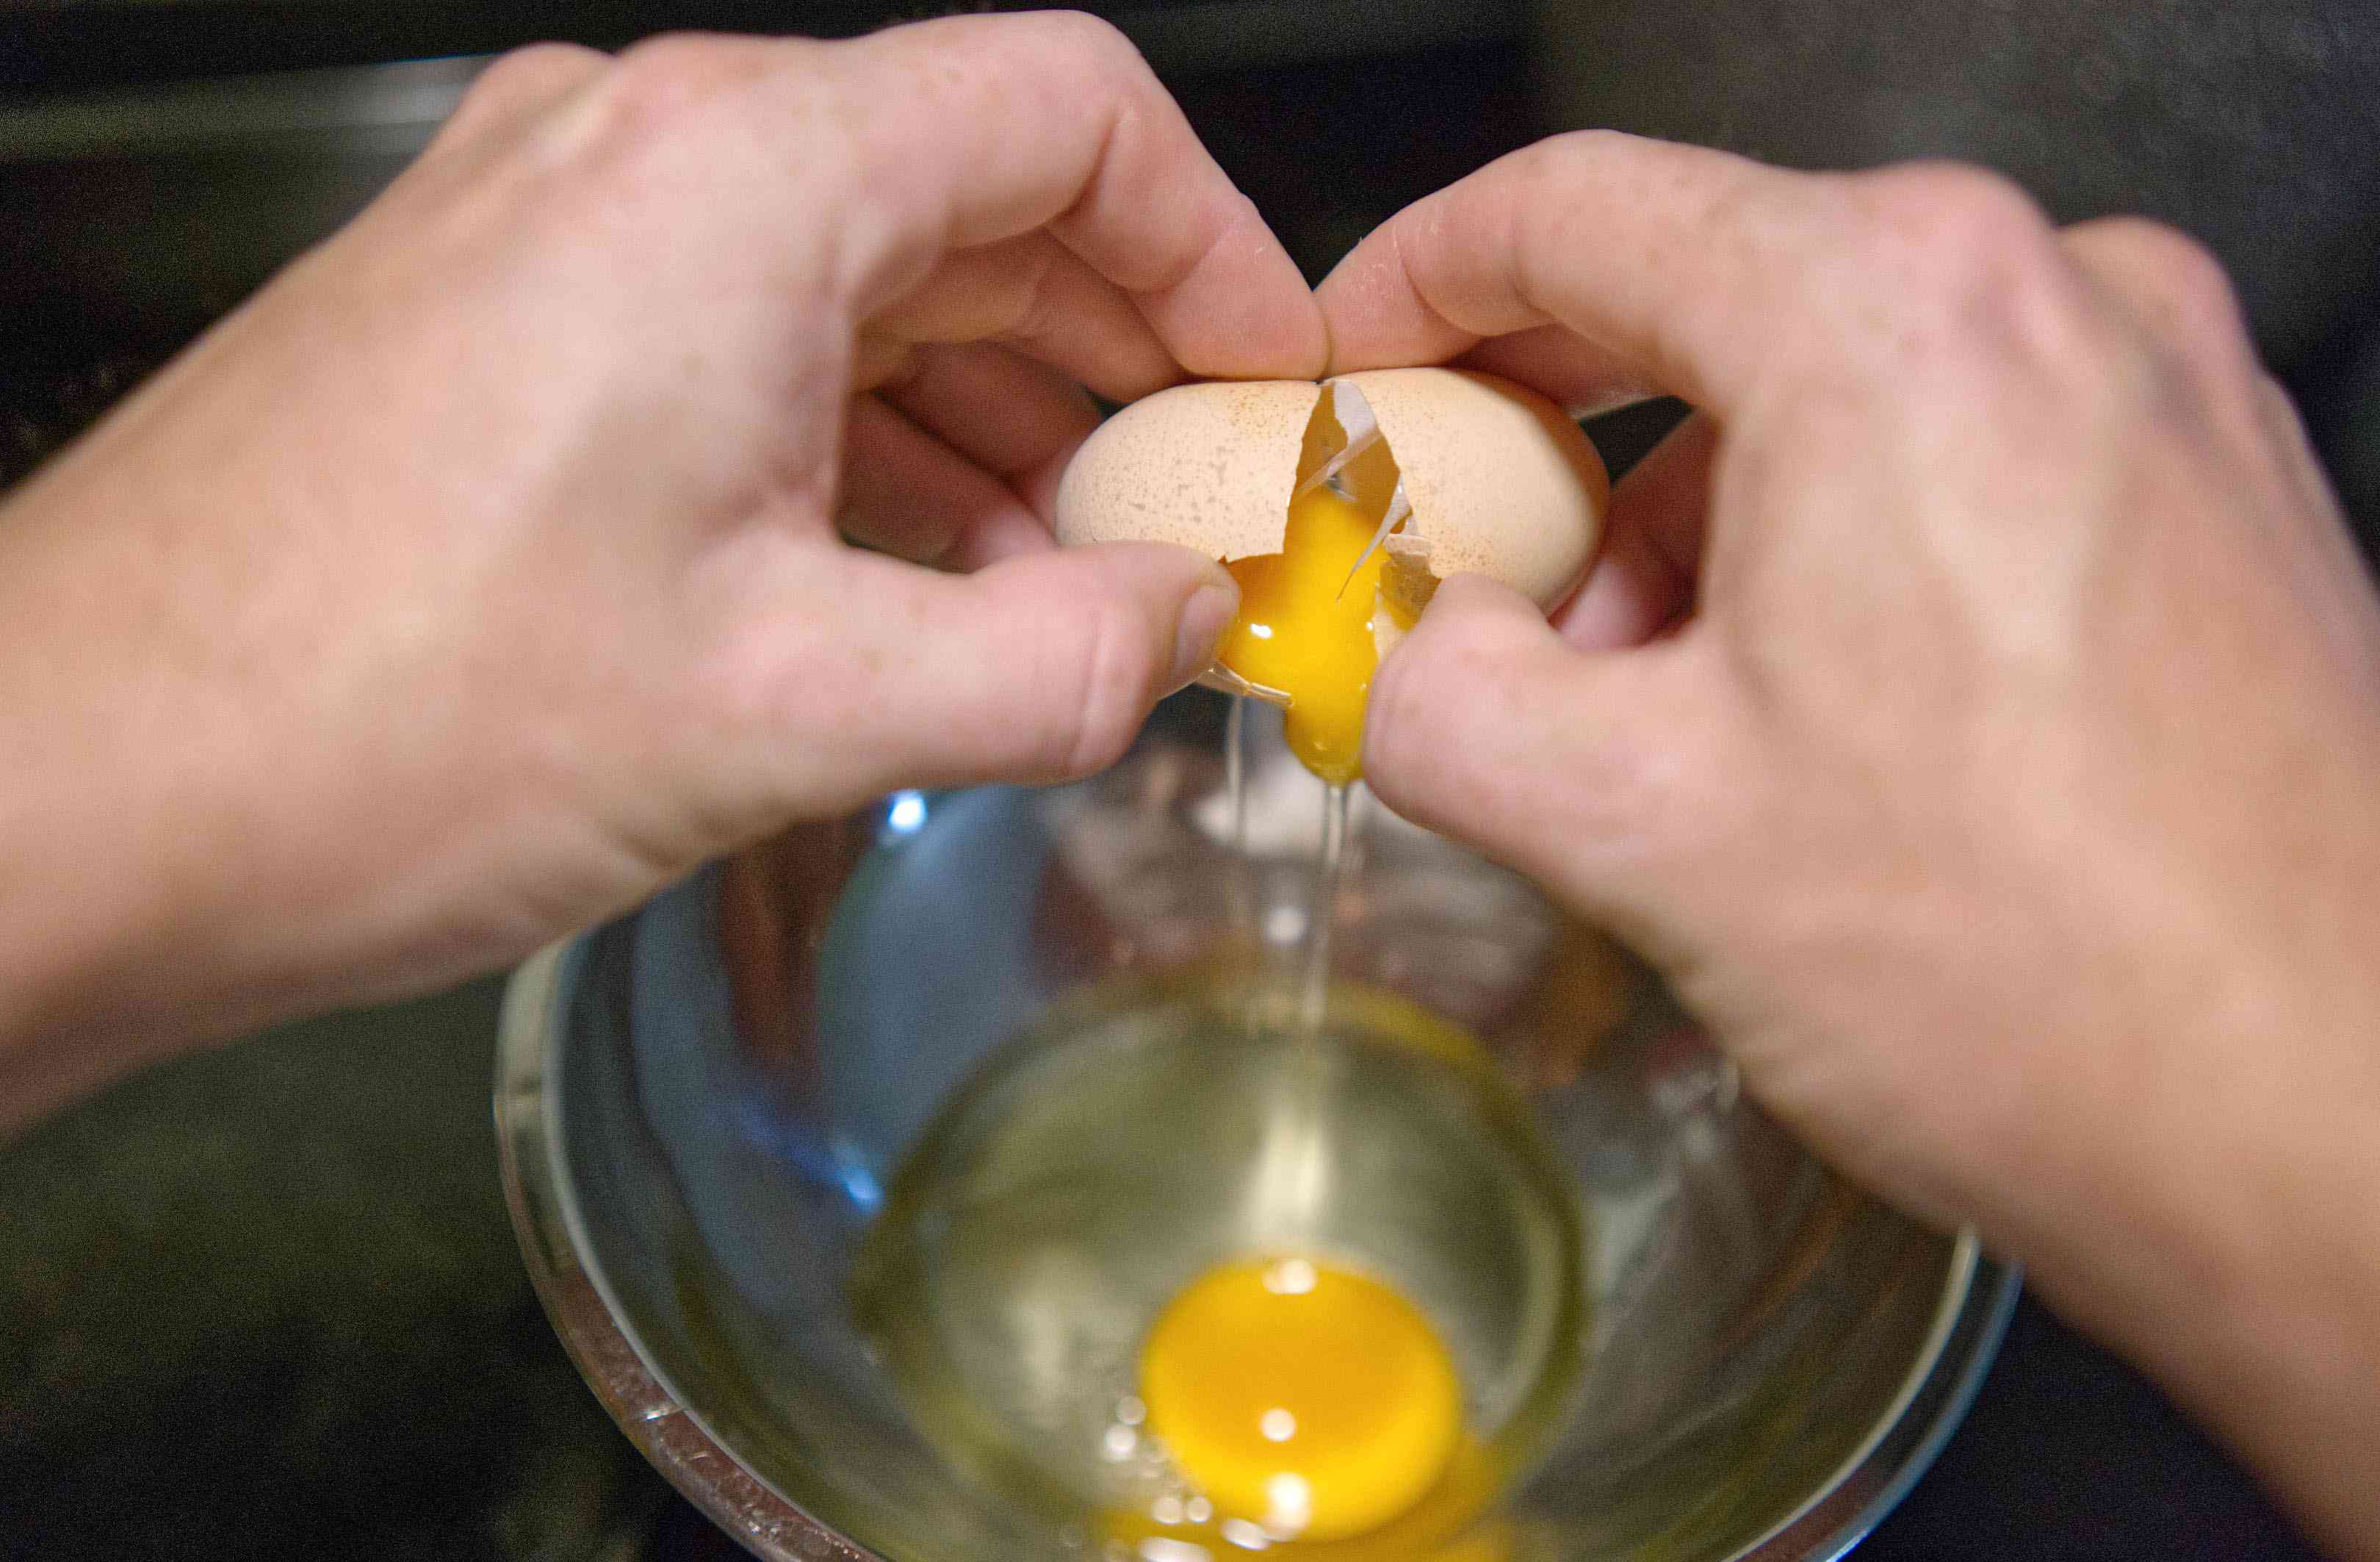 两只手把鸡蛋敲进钢碗里检查新鲜程度